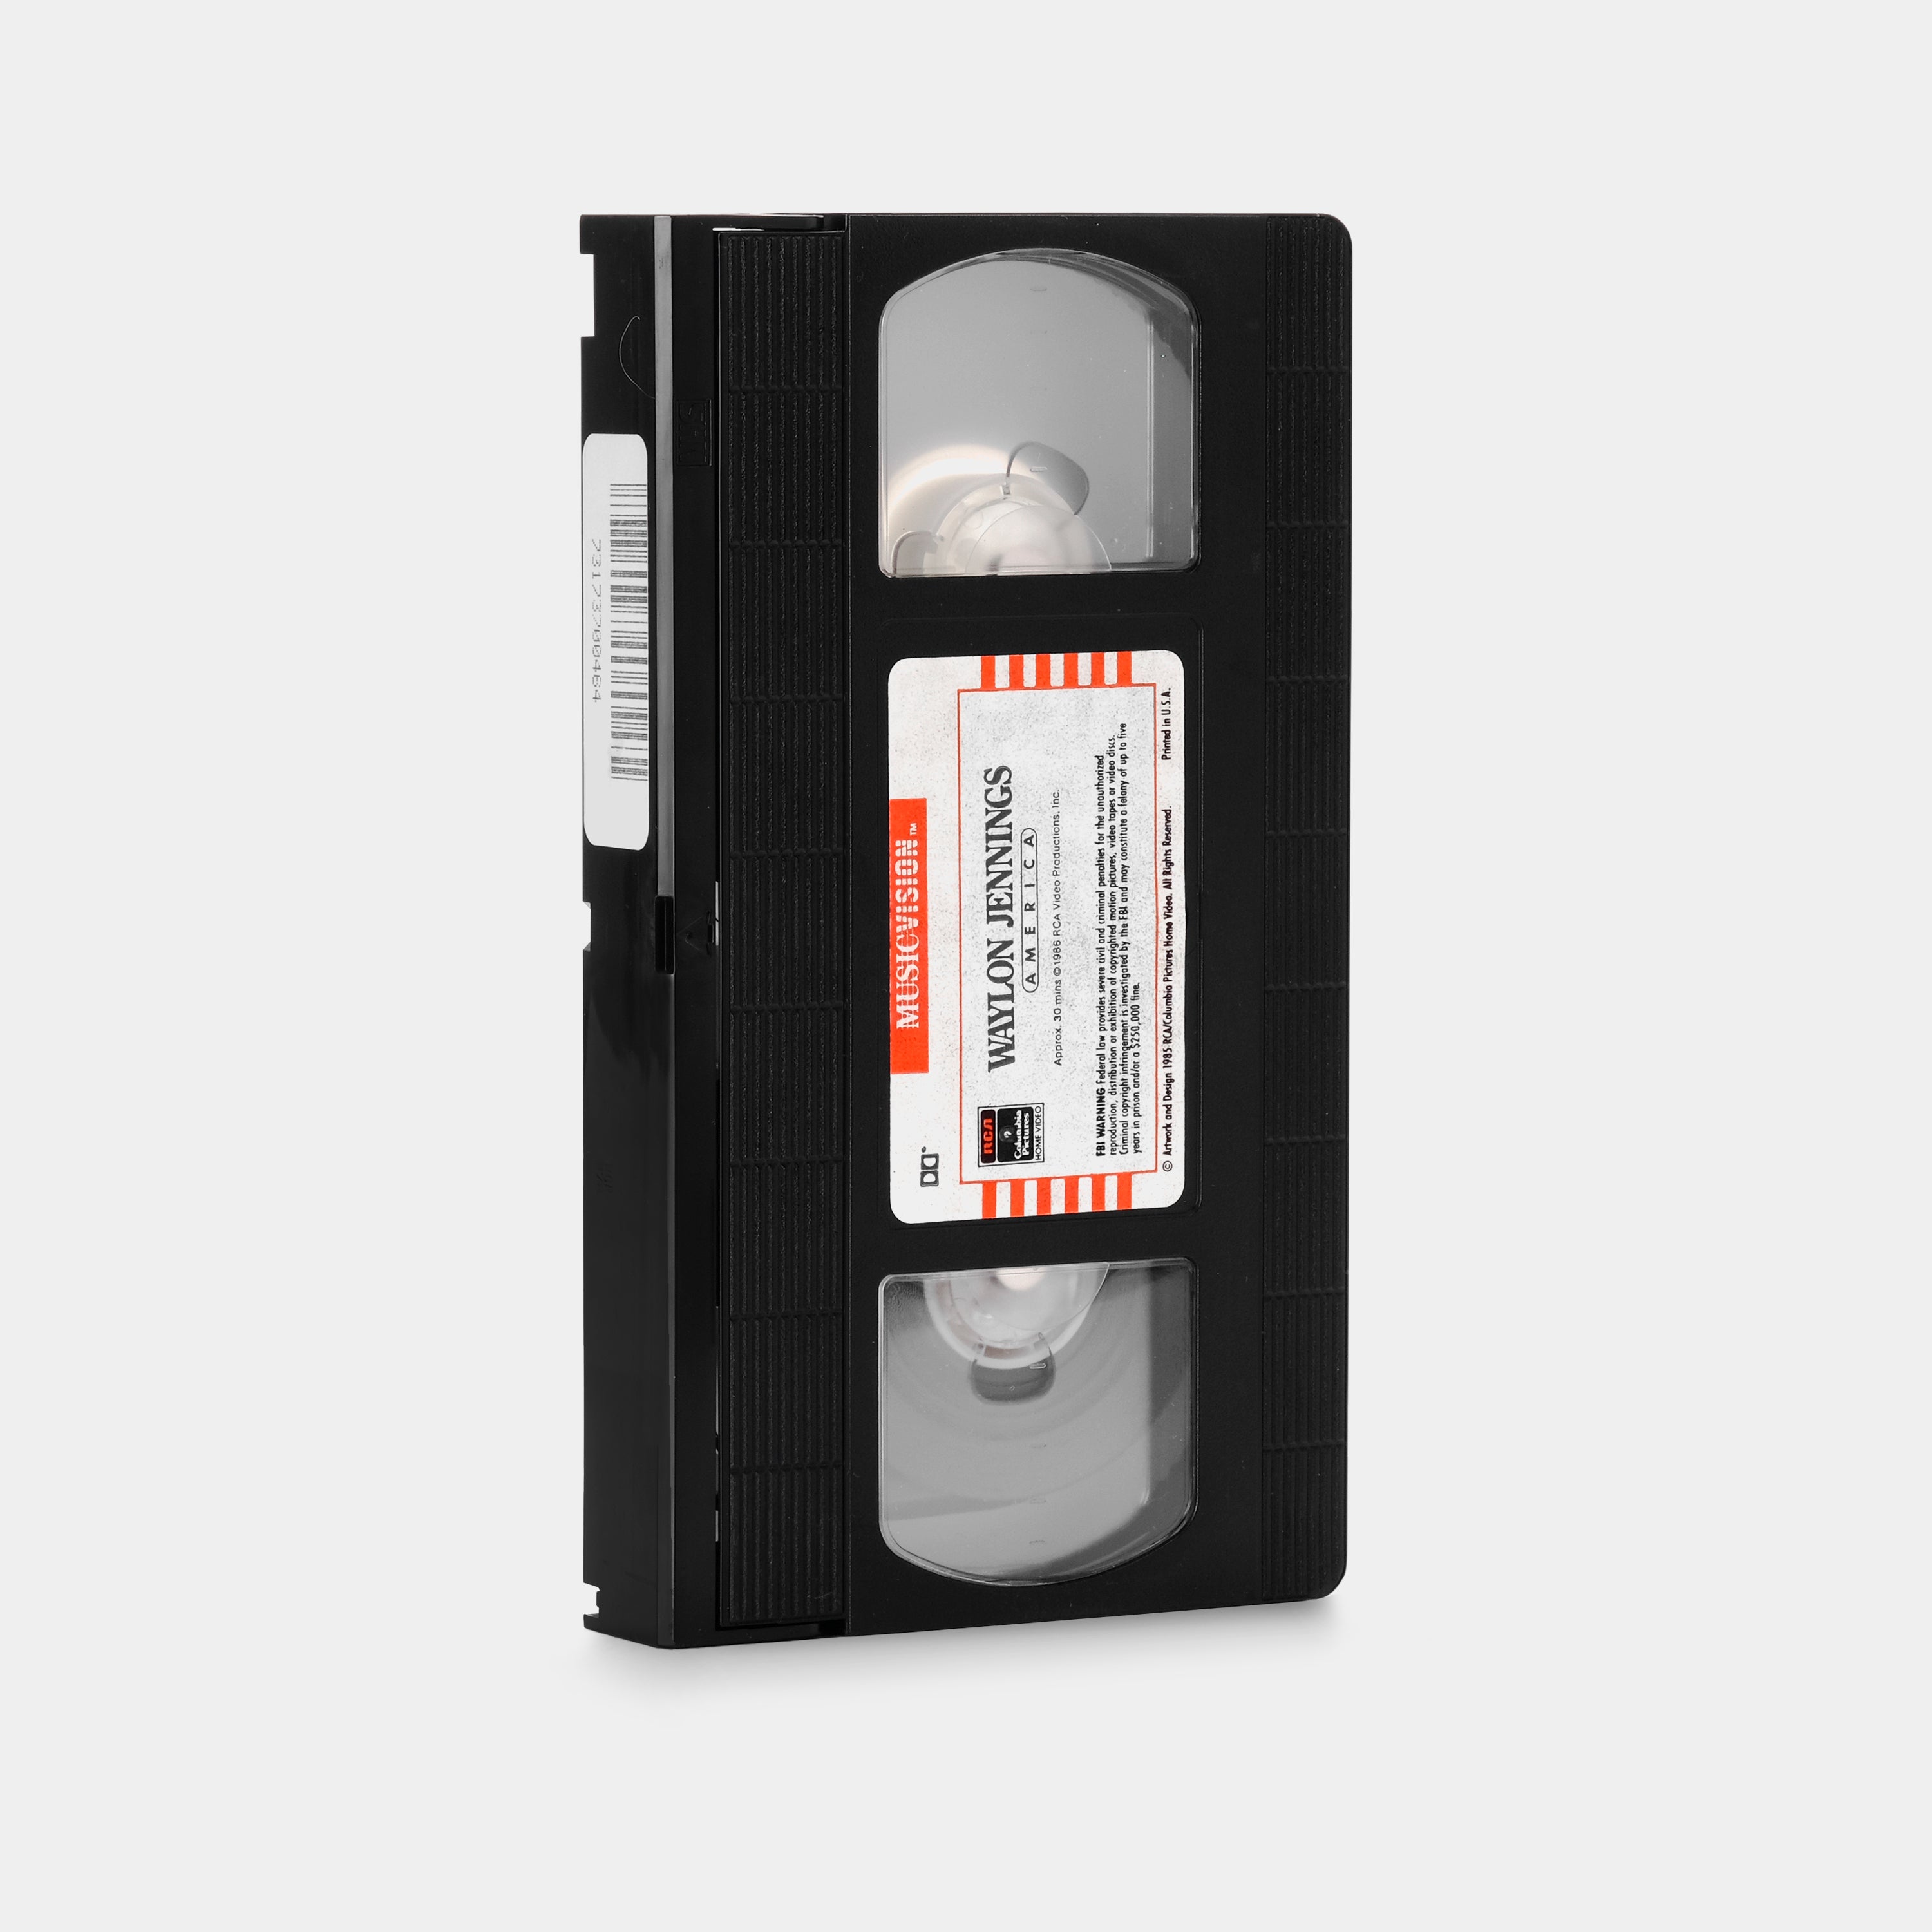 Waylon Jennings America VHS Tape